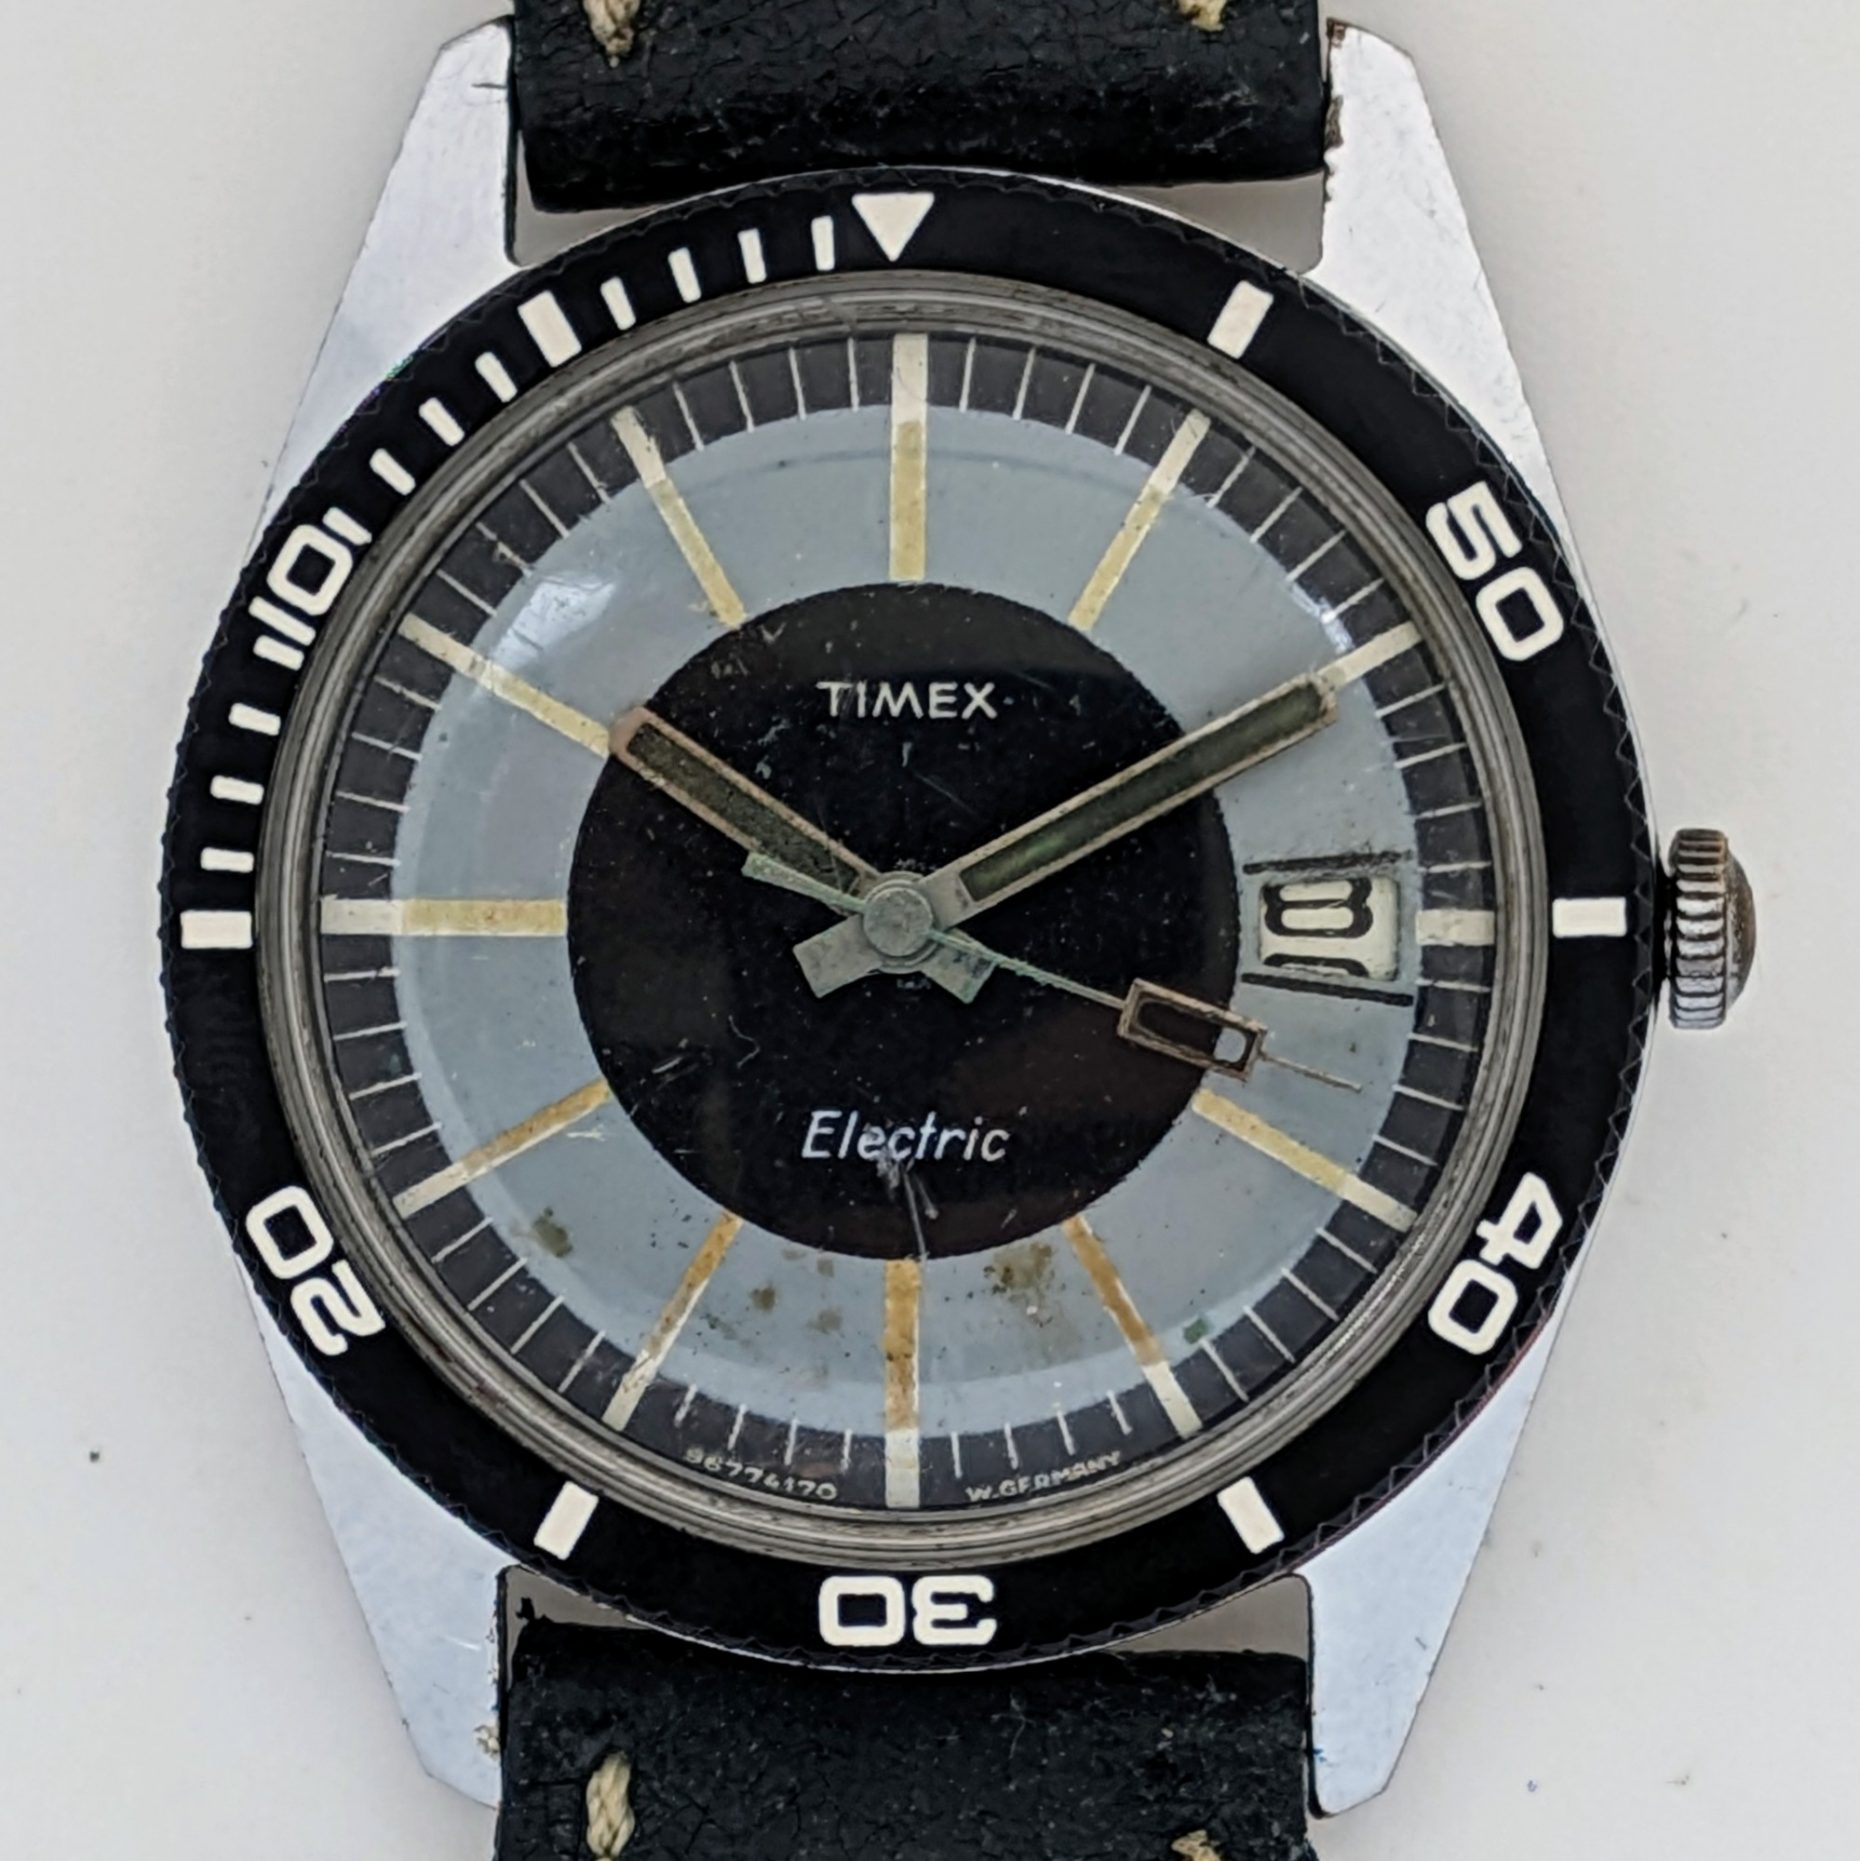 Timex Electric Calendar Dive Watch 1970 Ref. 9677 4170